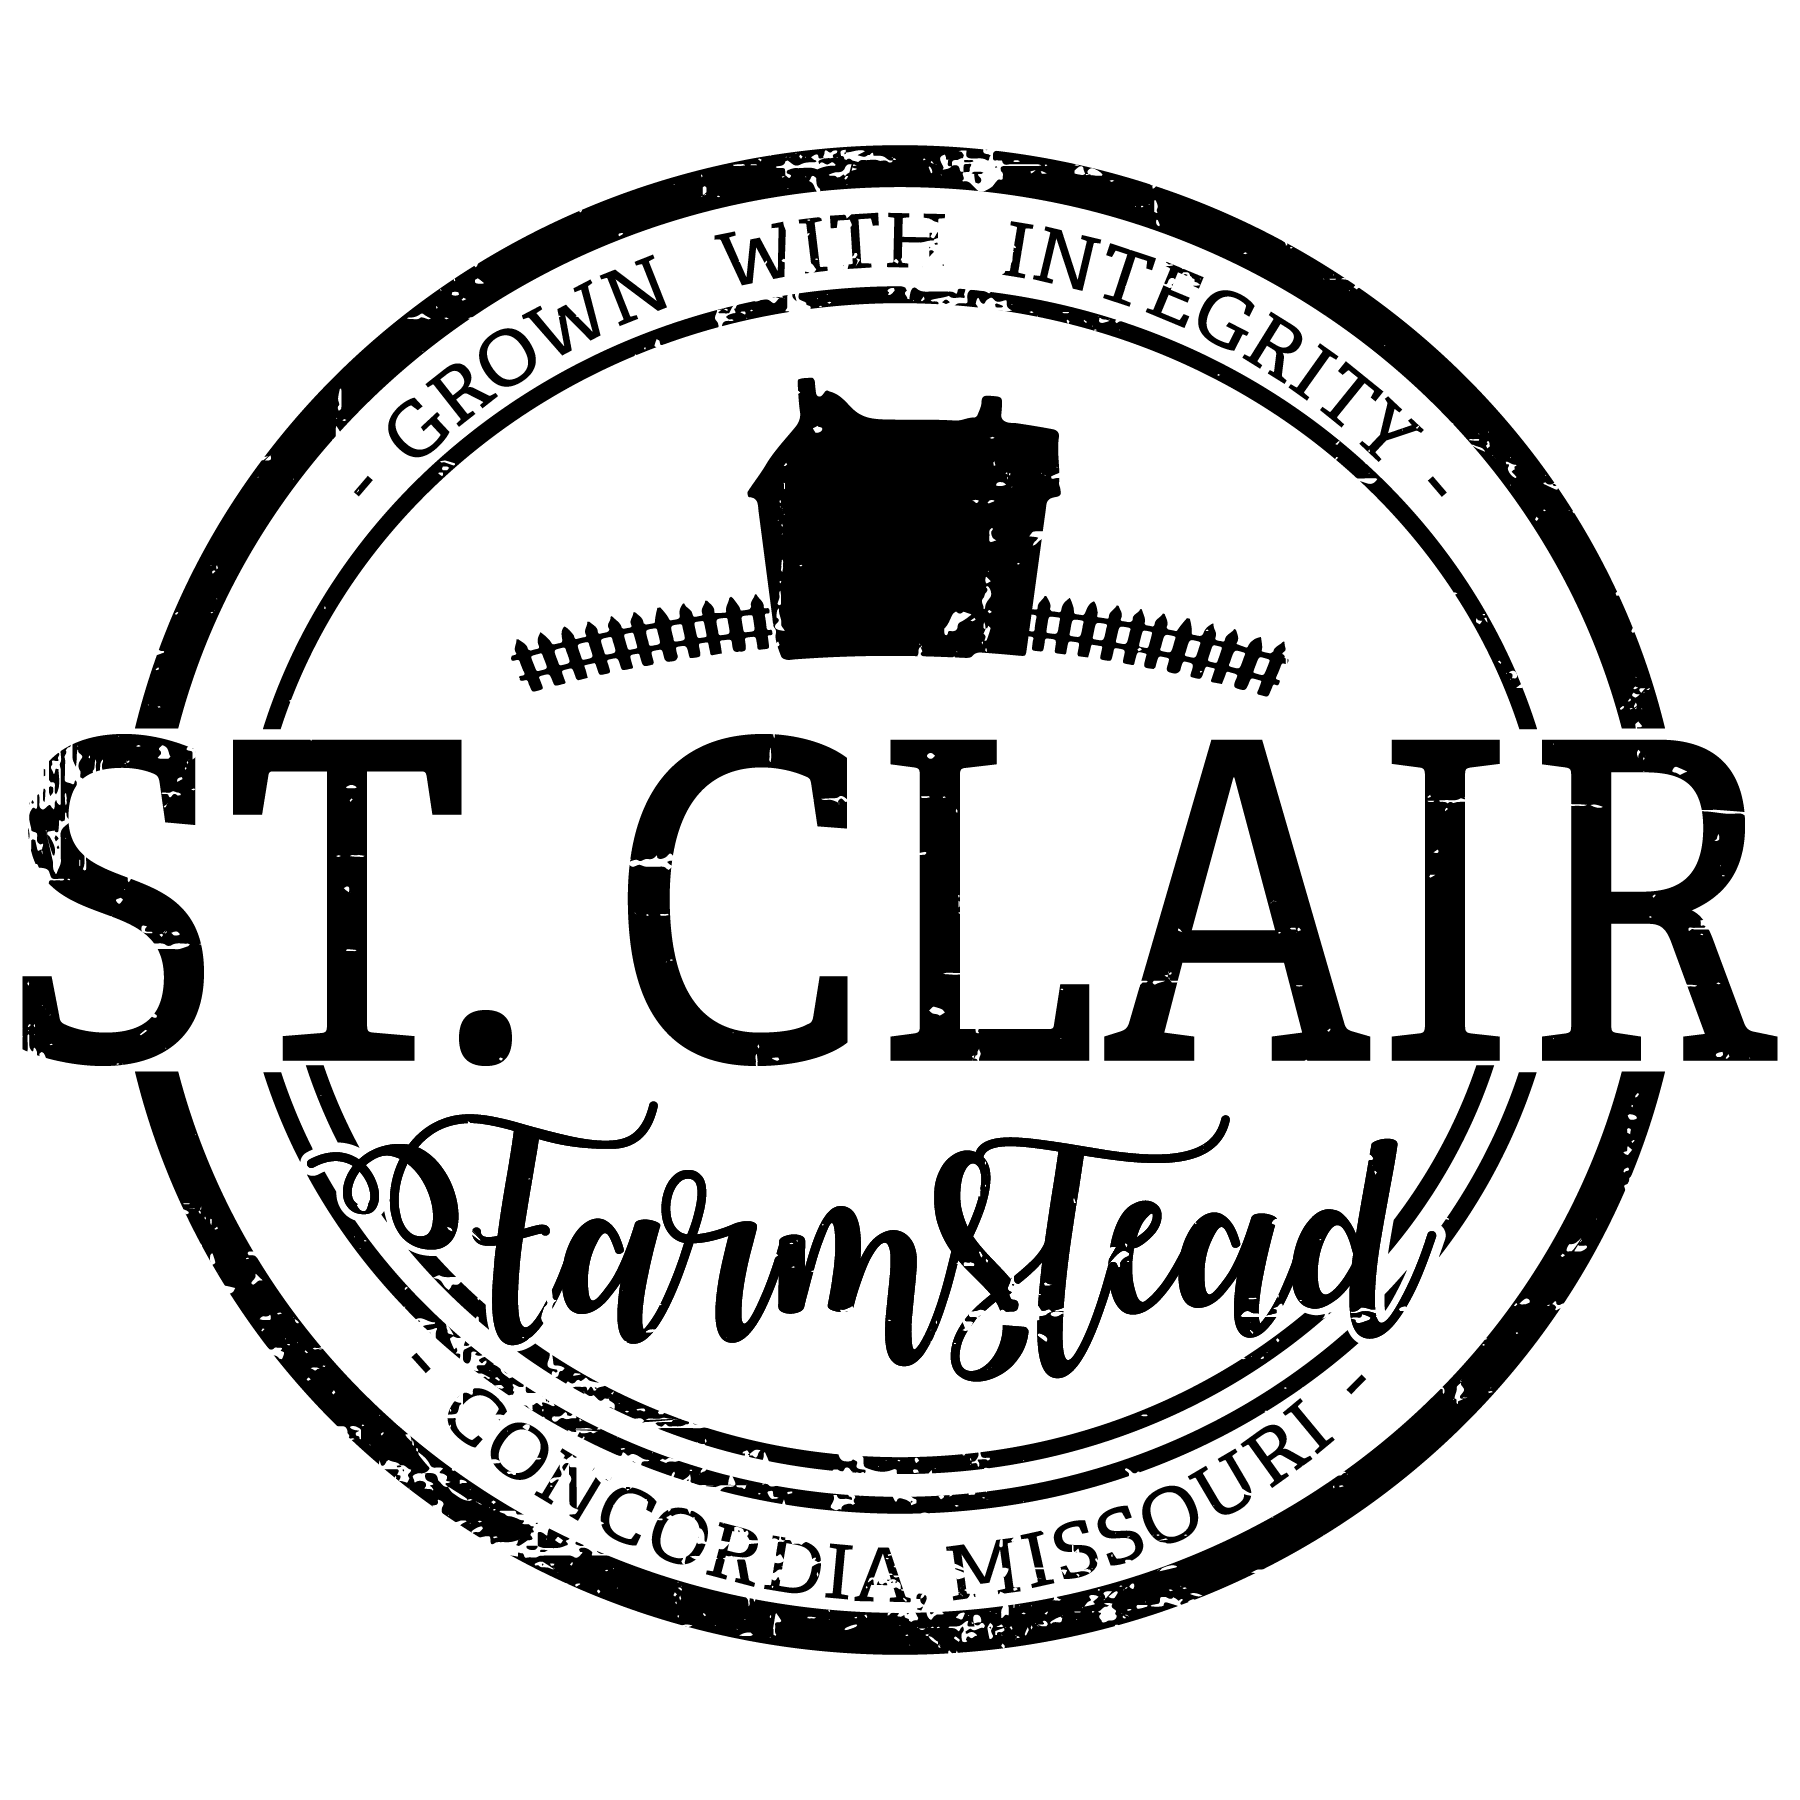 Farmstead Logo - St. Clair Farmstead Grown Produce Just Outside